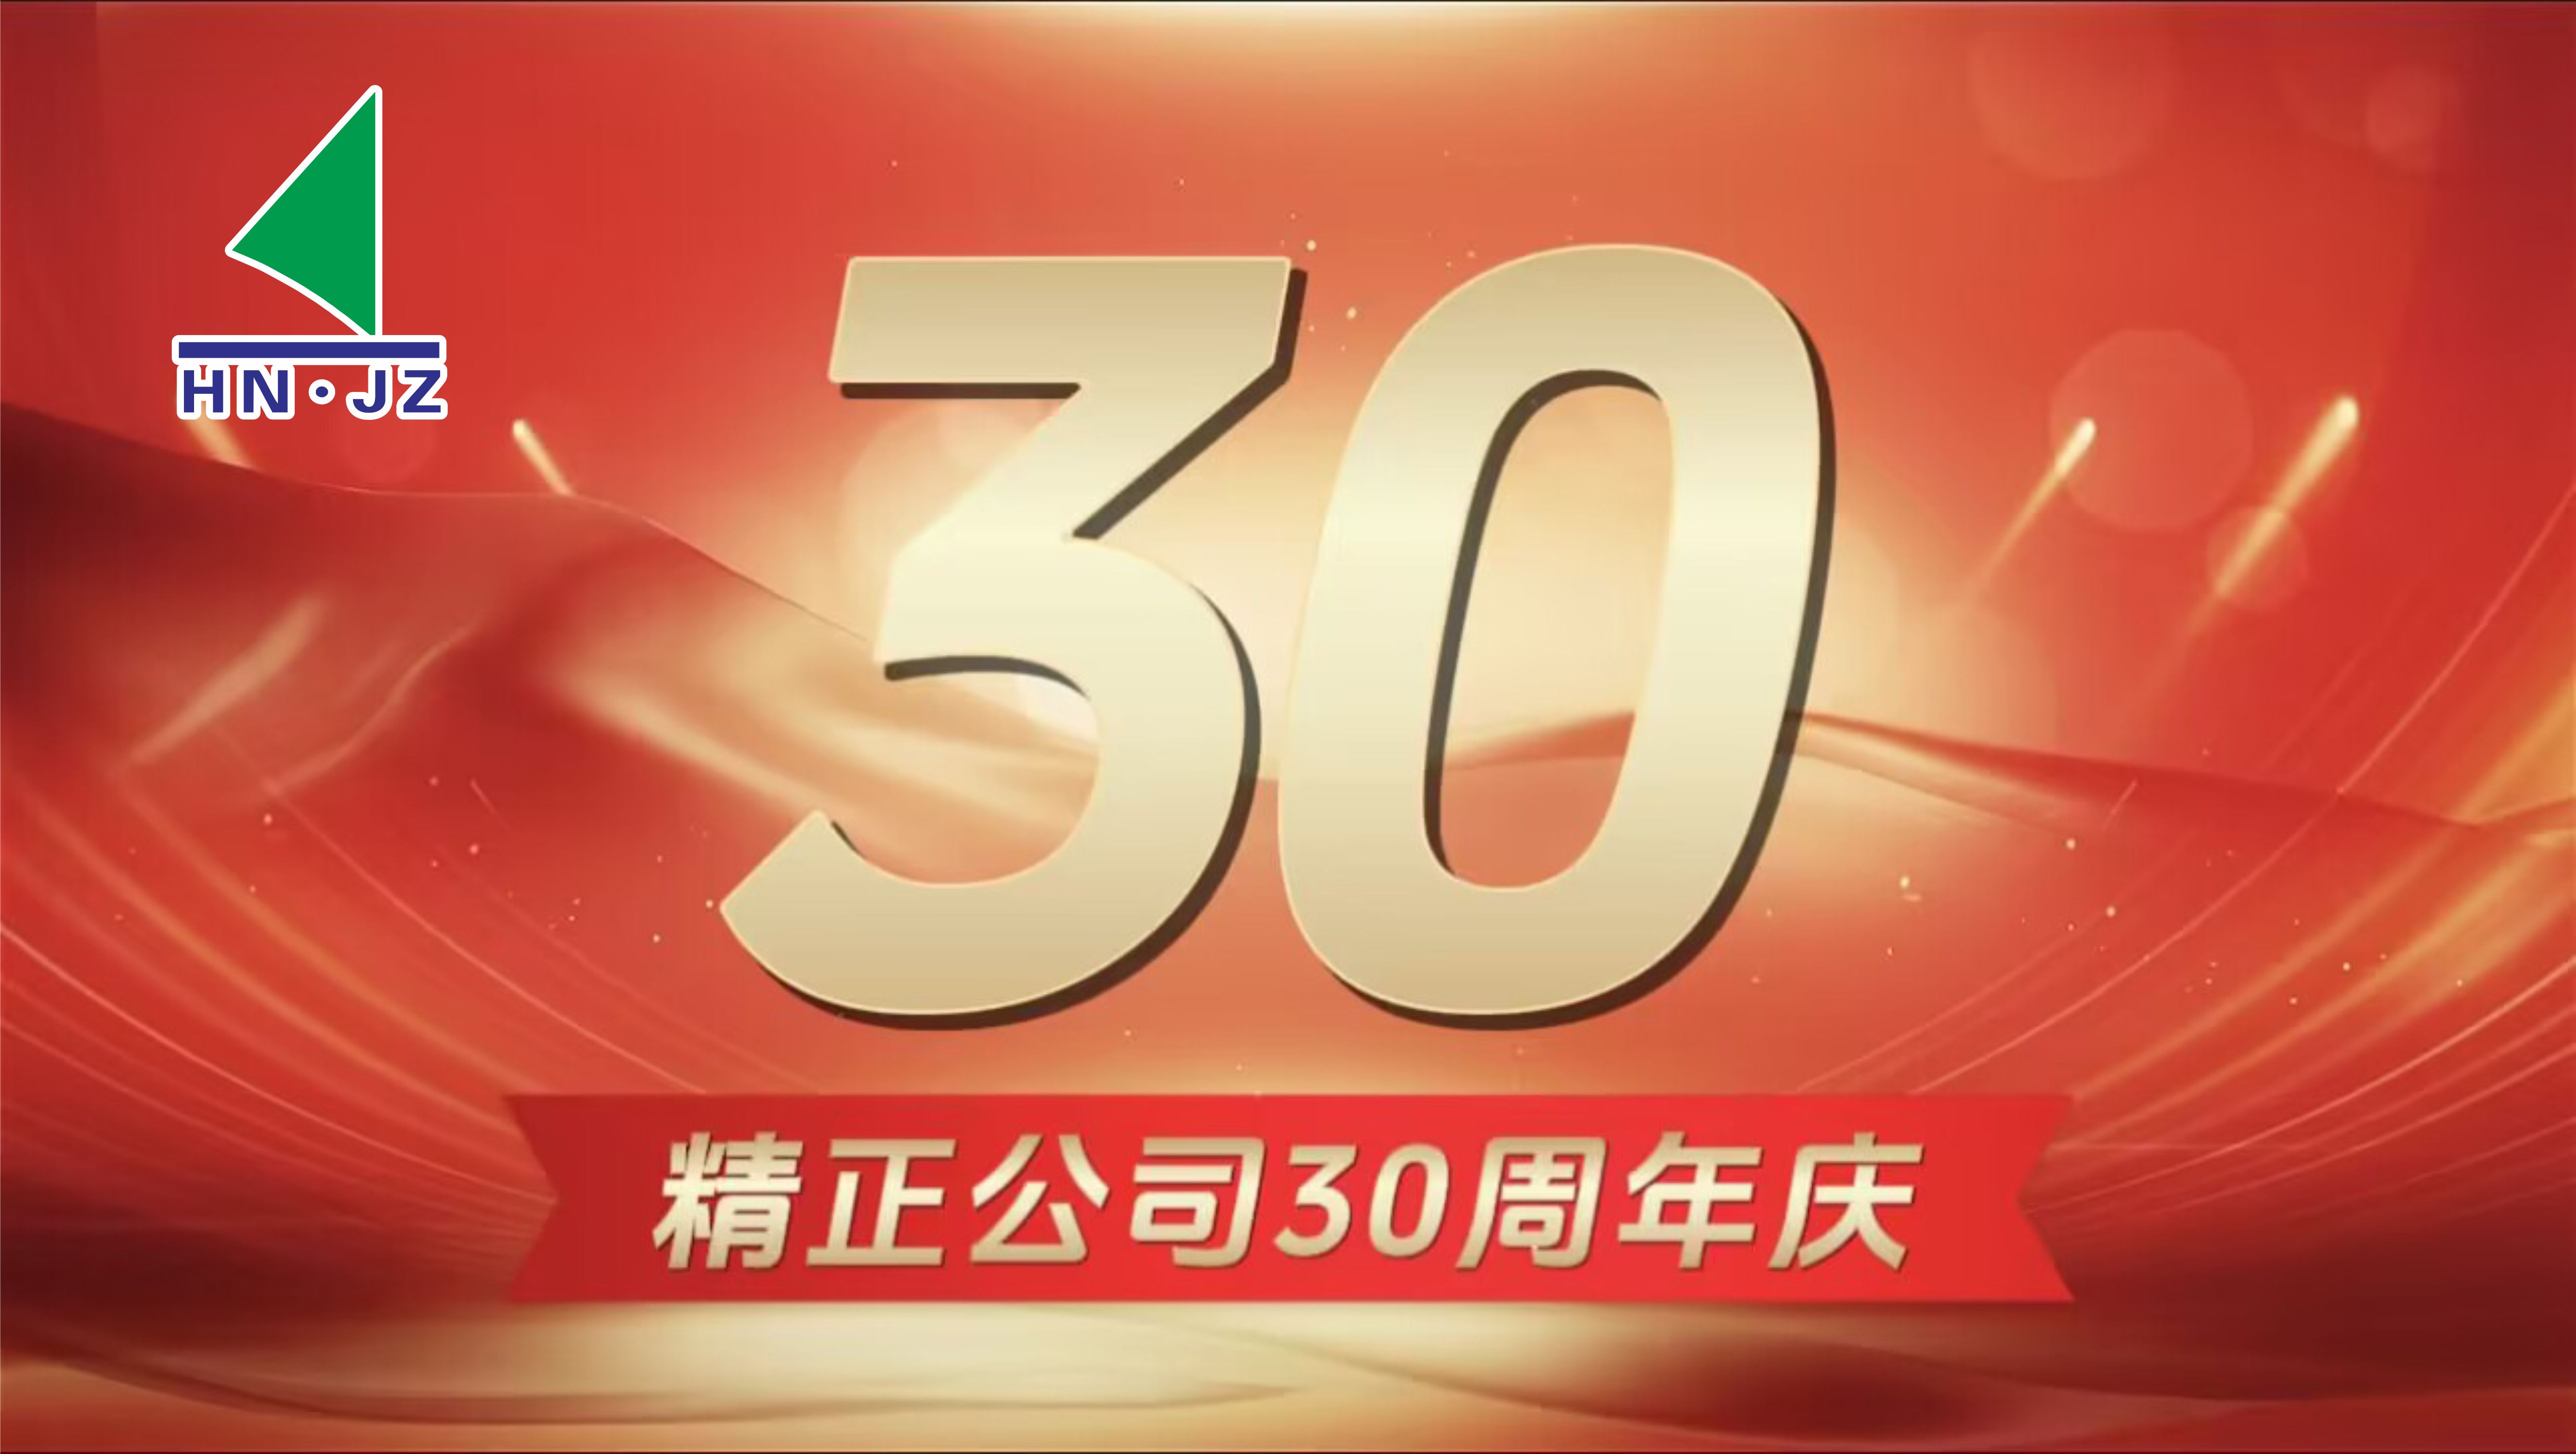 jn体育·（中国）官方网站设备30周年庆典